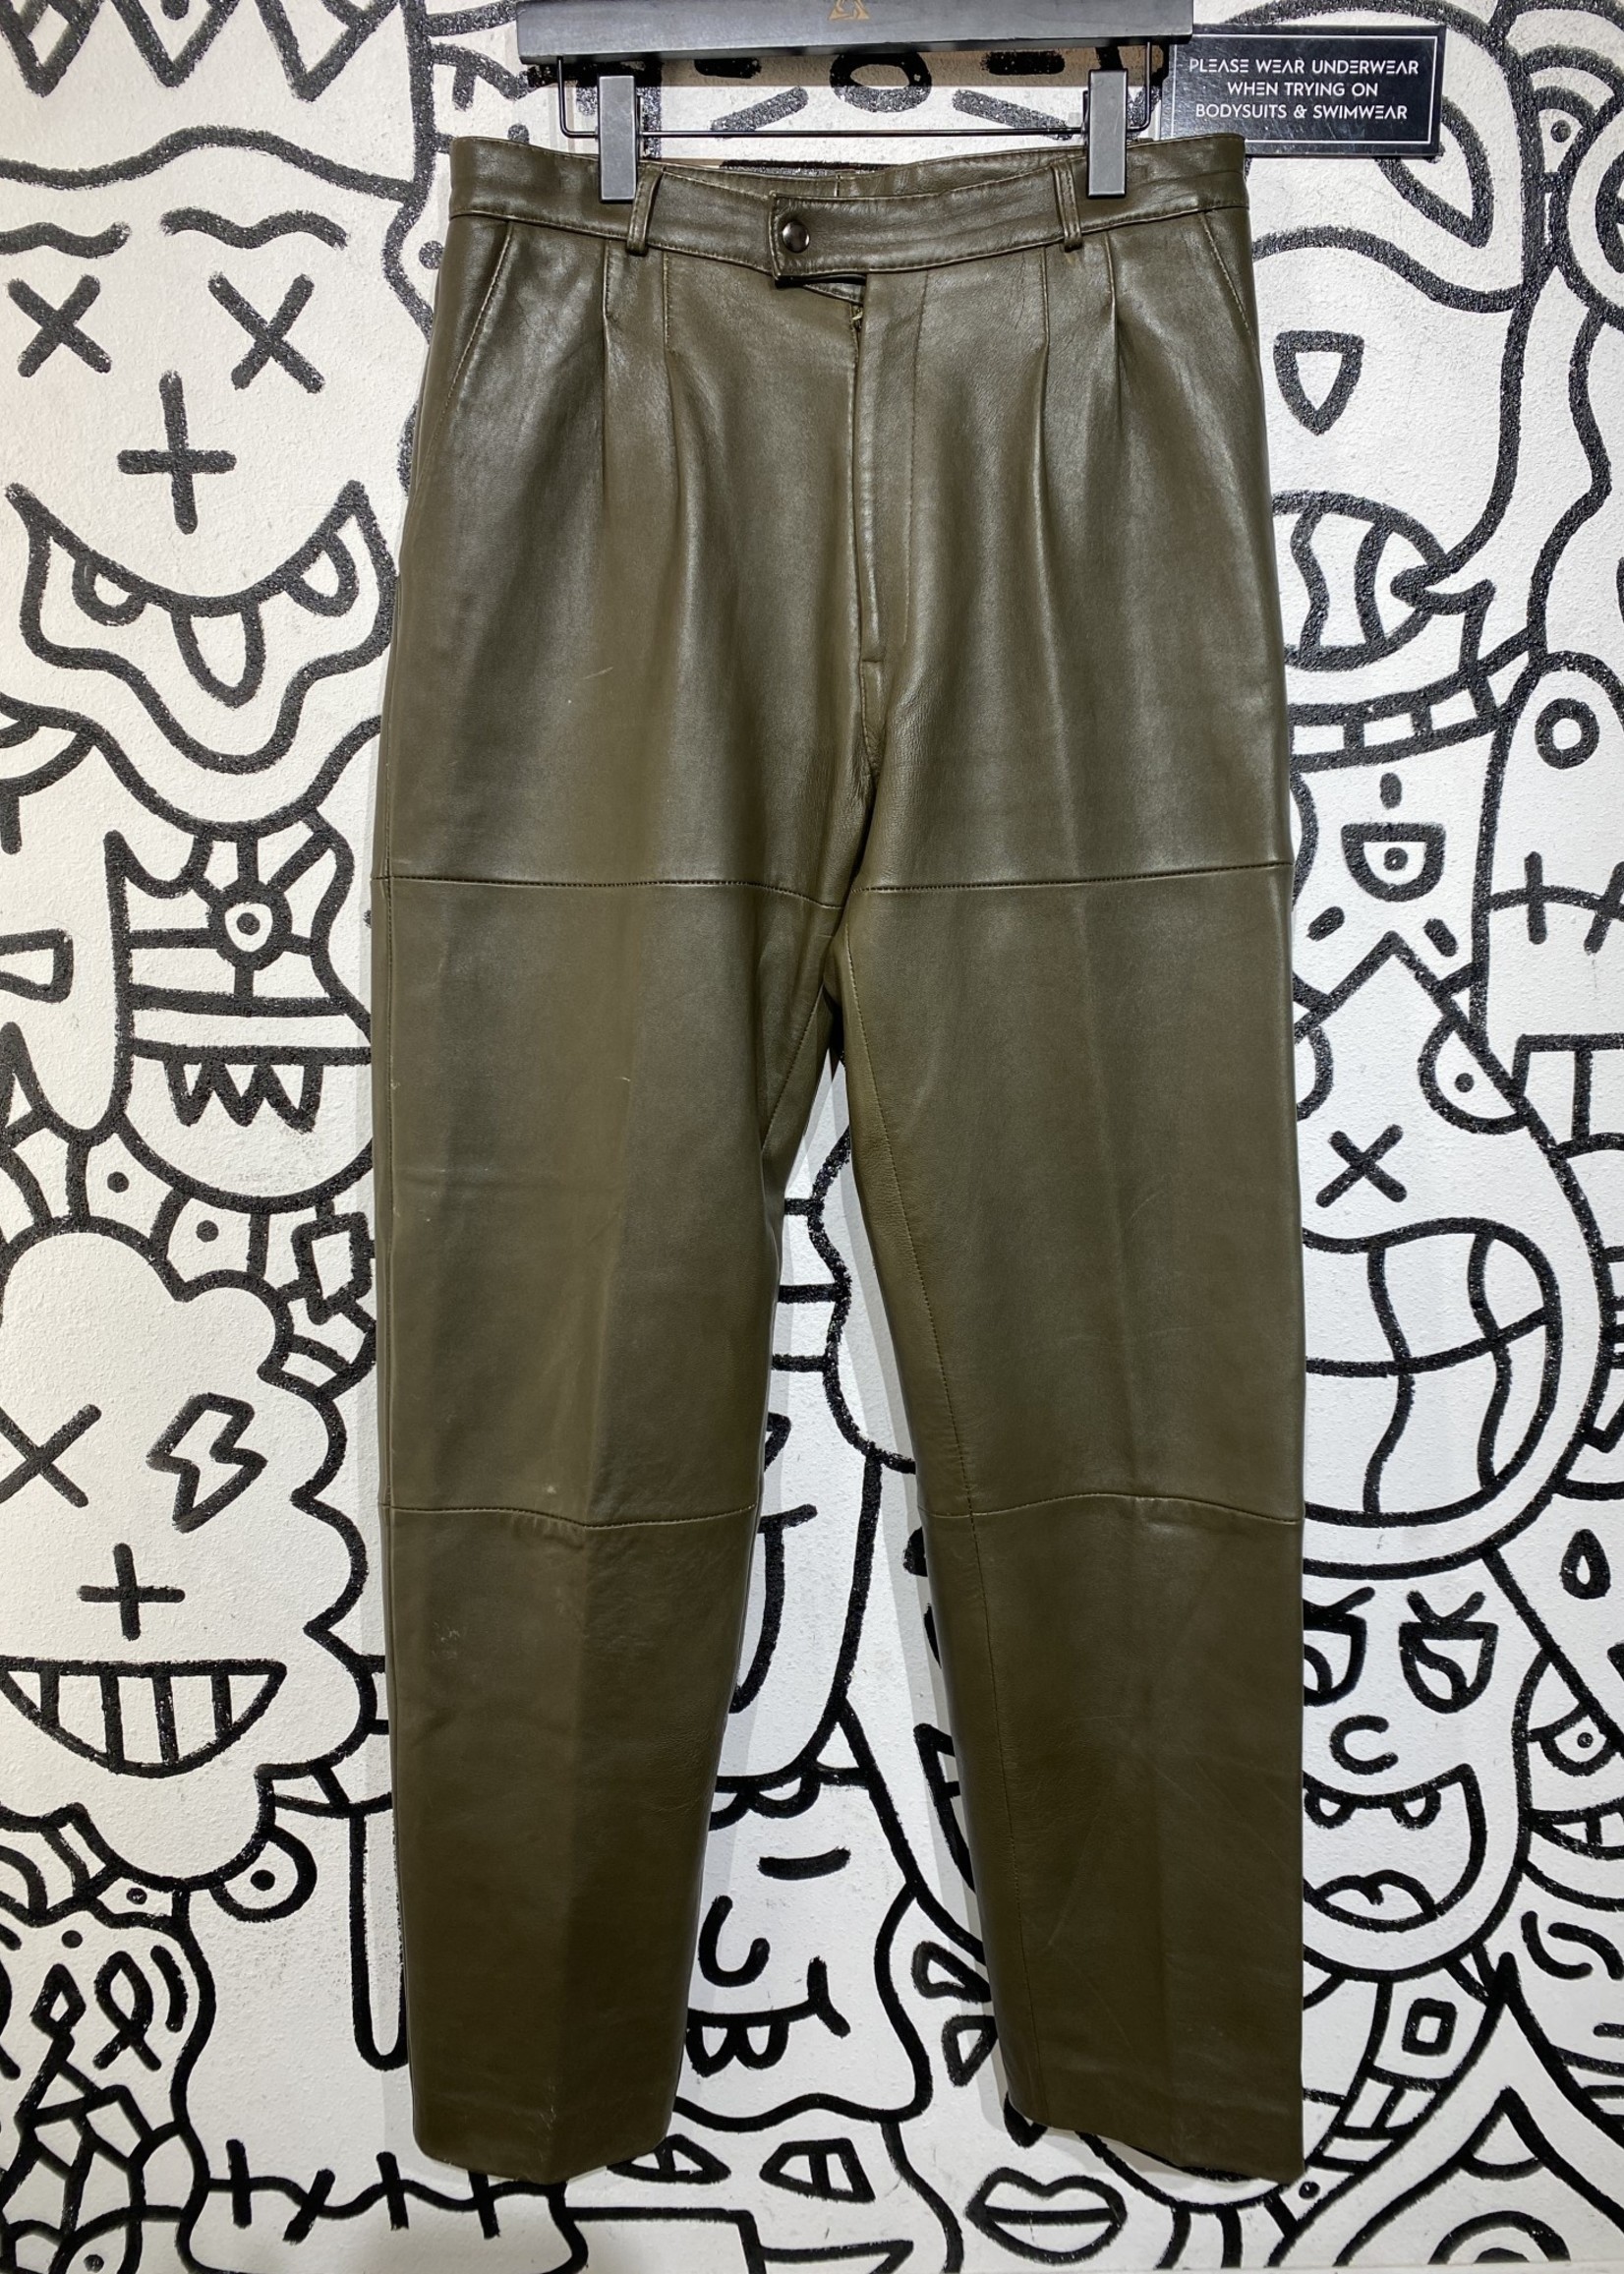 4 Openers Vintage Brown Leather Pants 34"